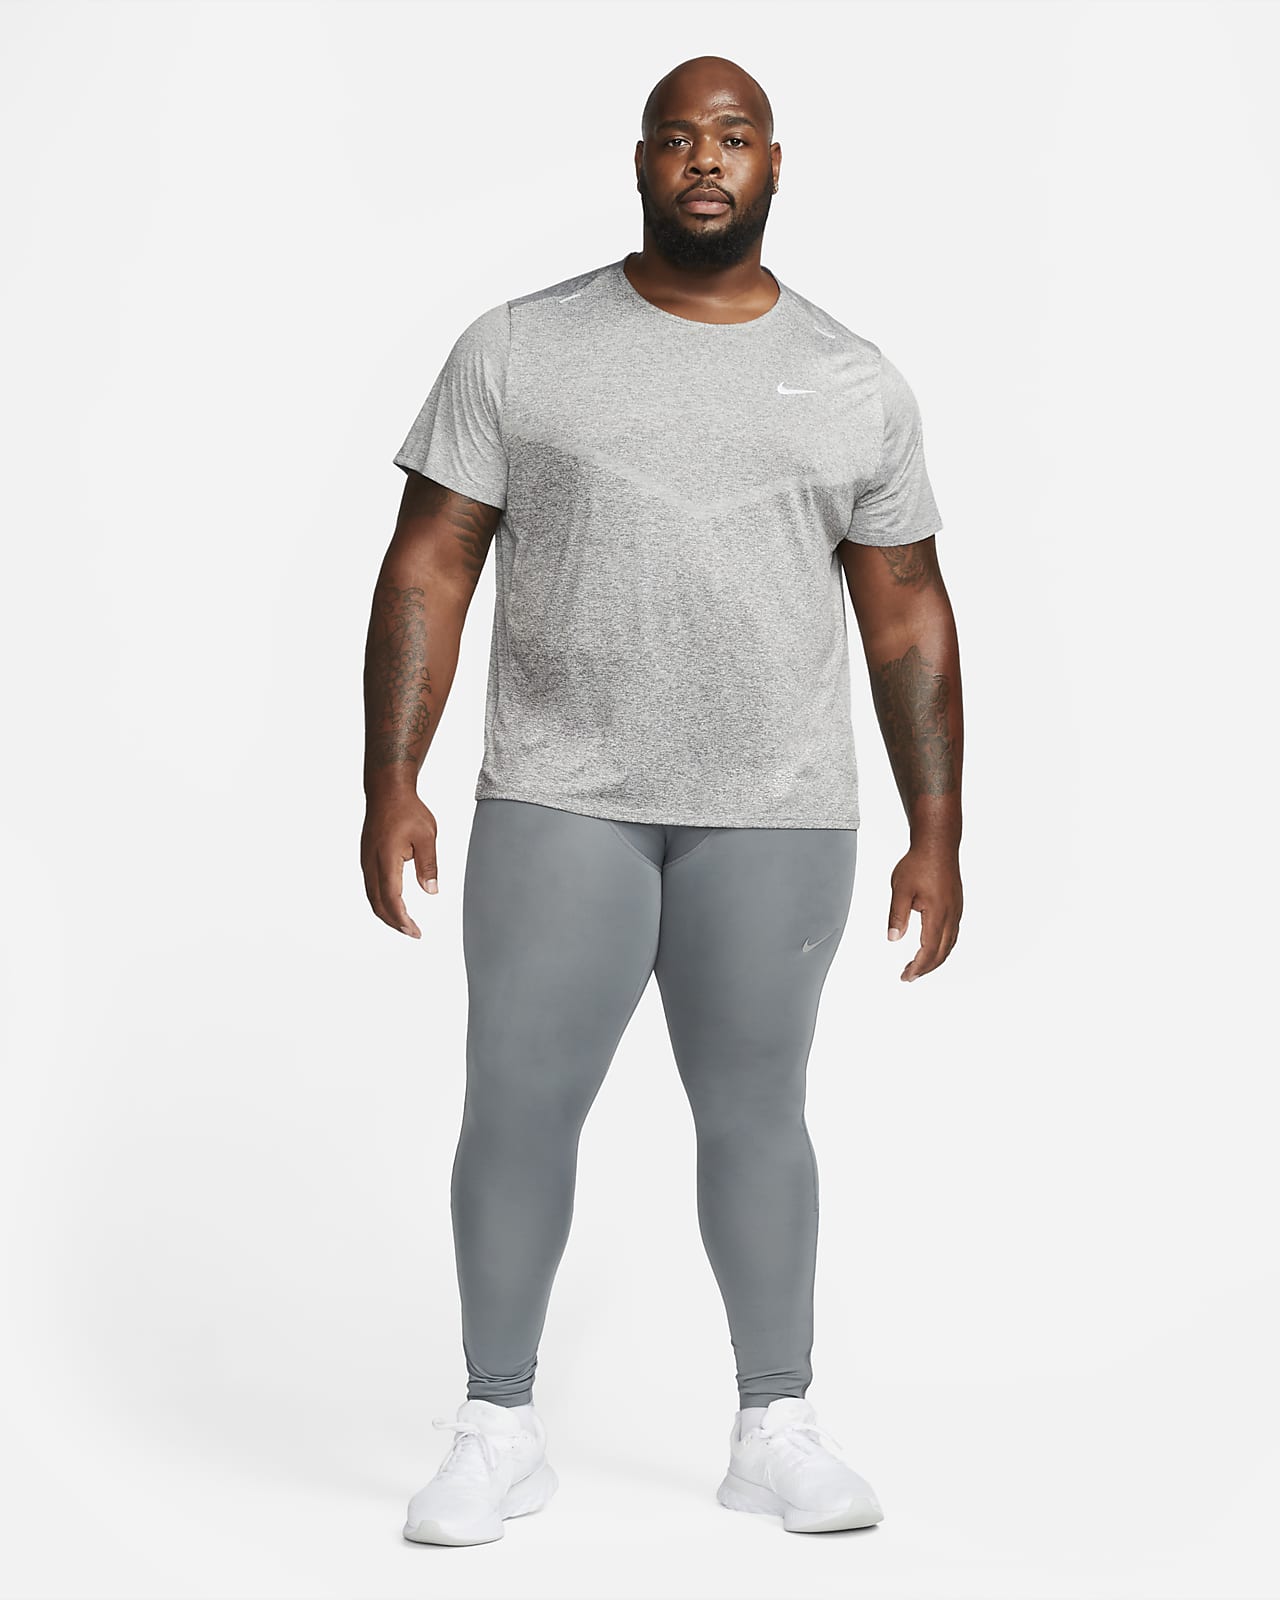 Men's Dri-FIT Tights & Leggings. Nike CA